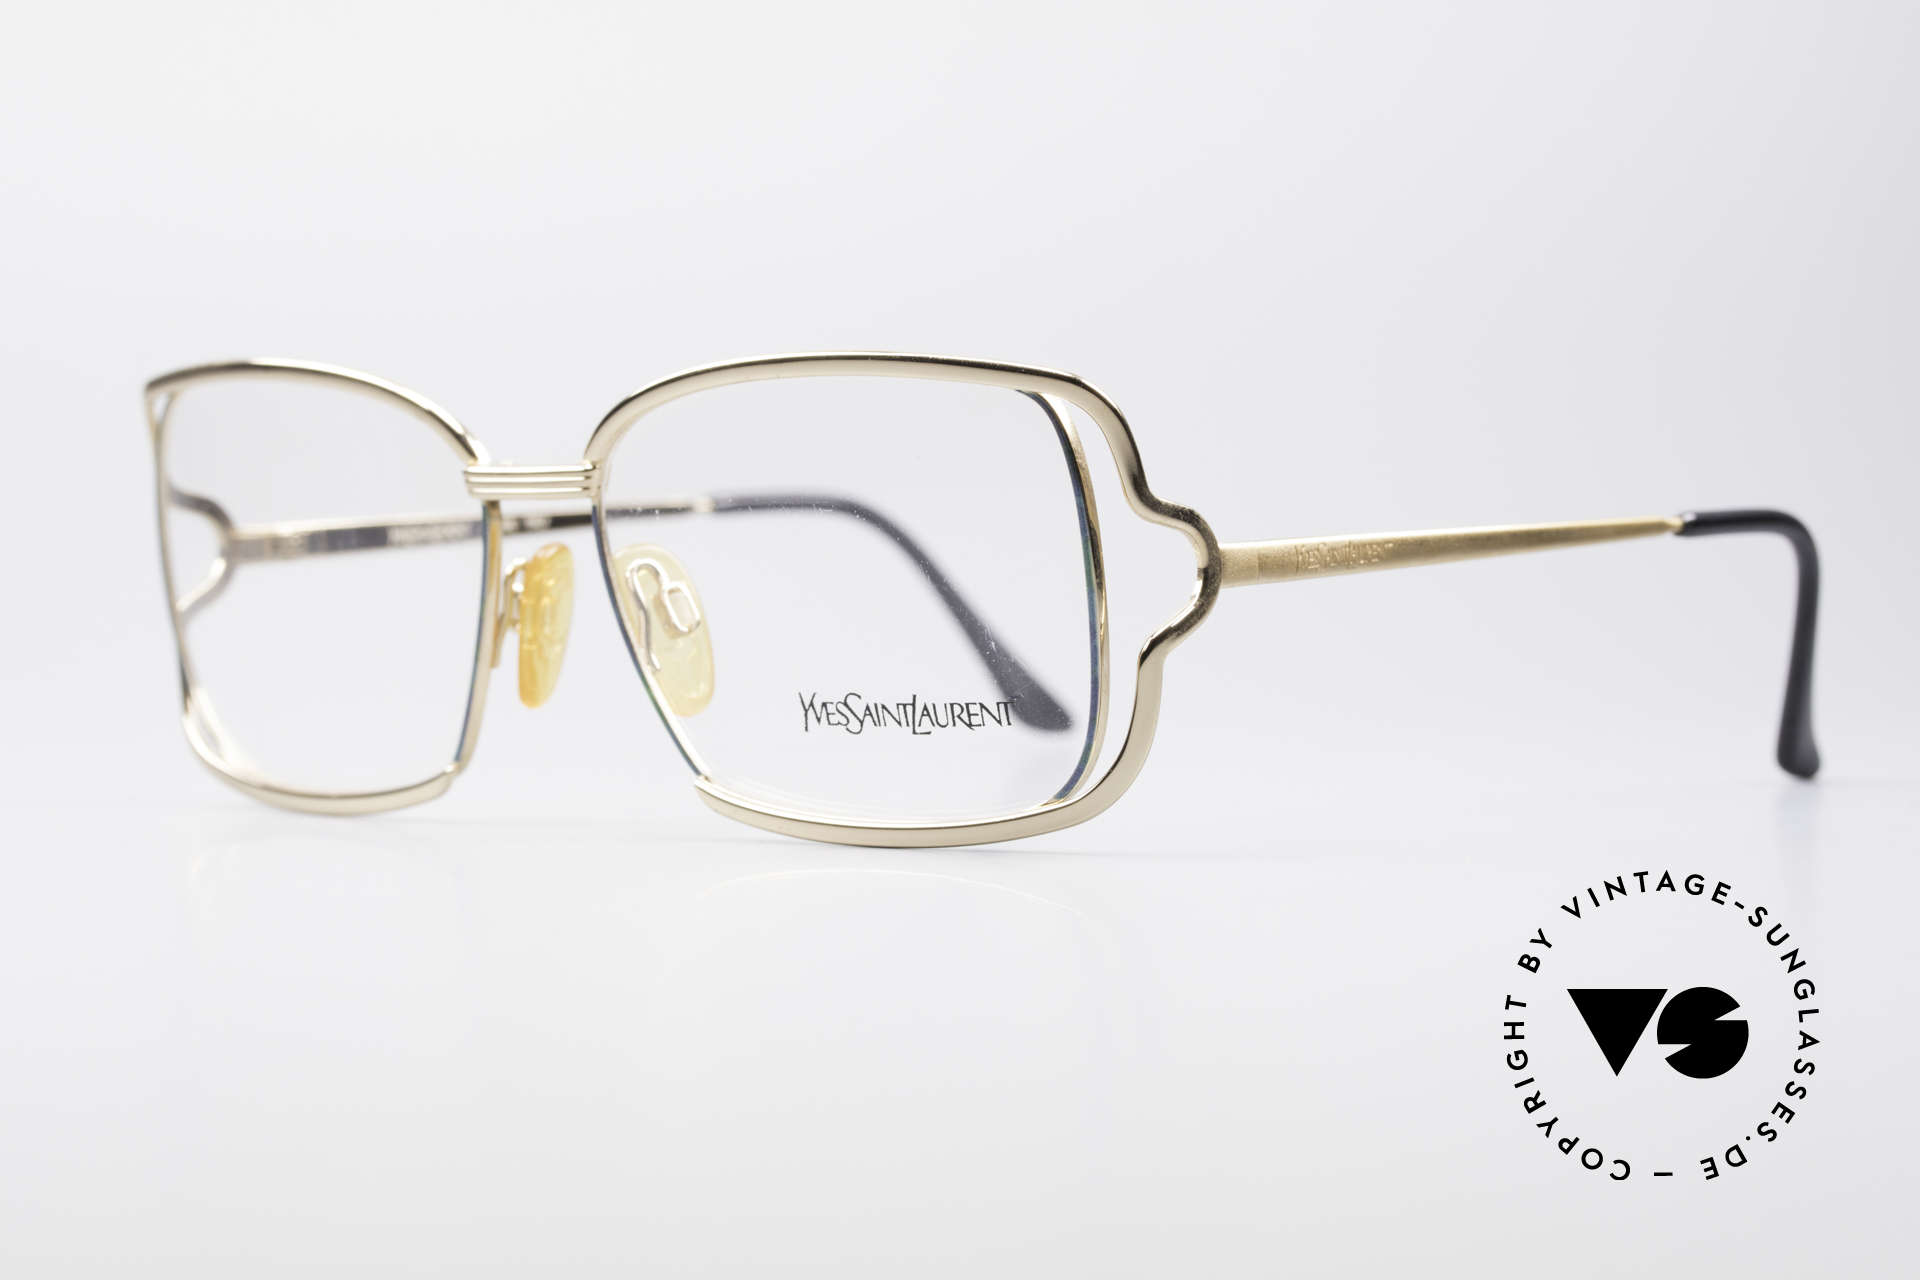 Yves Saint Laurent 4046 Vintage Ladies Eyeglasses, simply a glamorous designer frame; eye-catcher, Made for Women